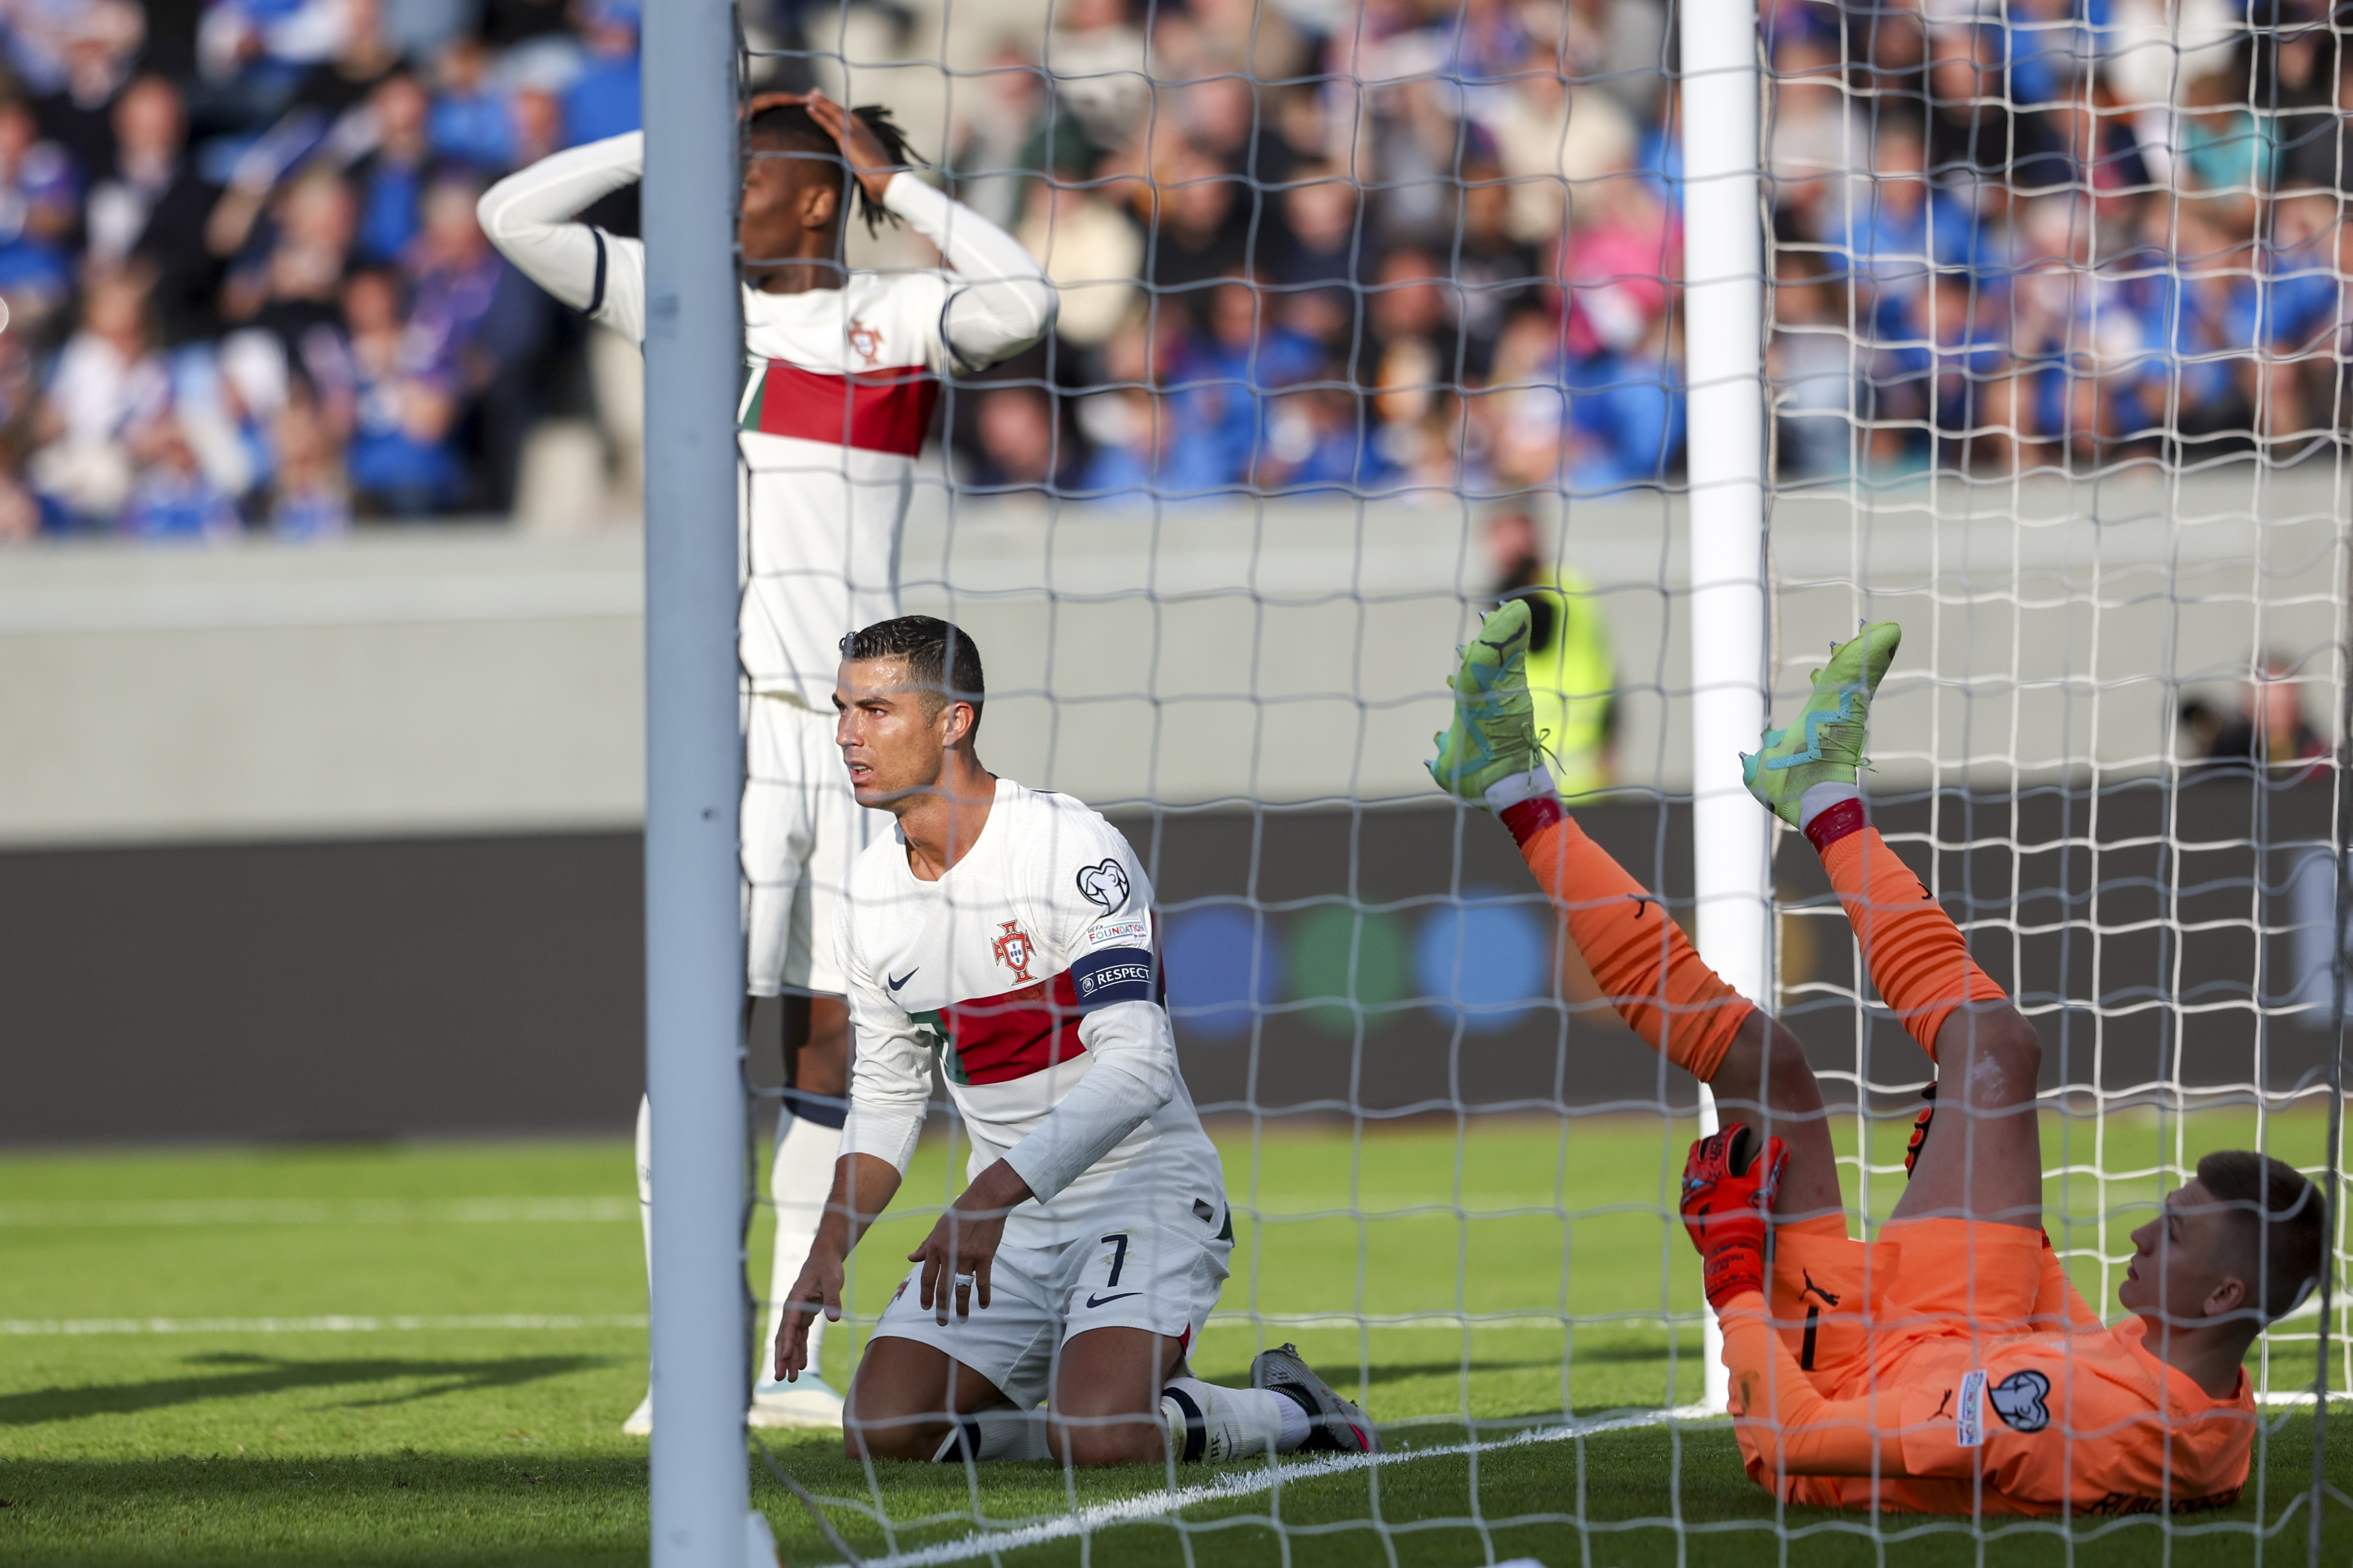 Com outros era sorte, com Ronaldo é só destino (a crónica do  Islândia-Portugal) – Observador